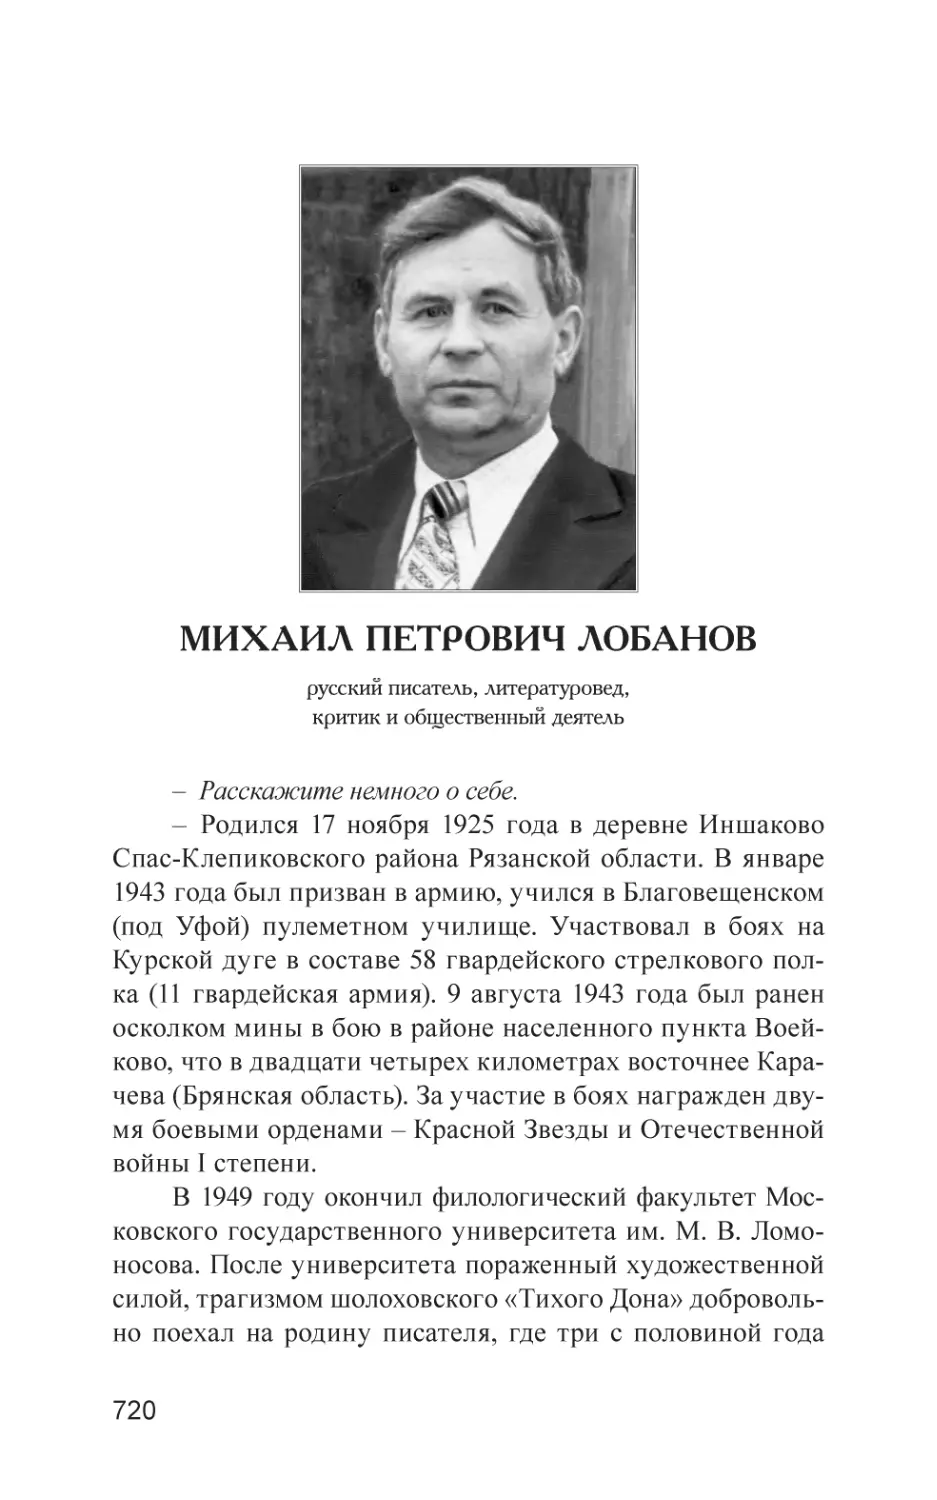 Михаил Петрович Лобанов